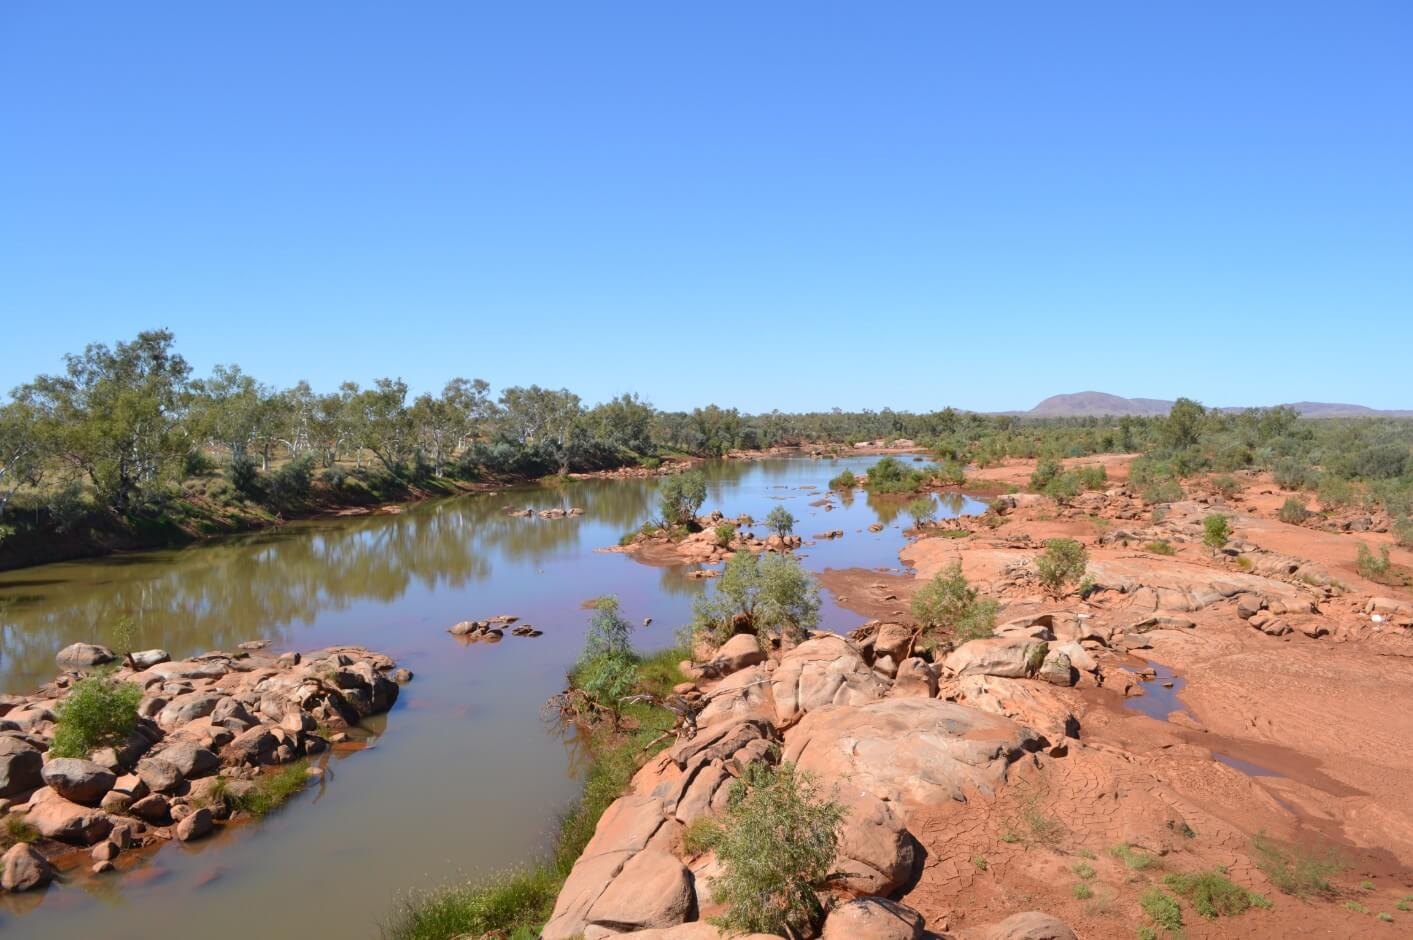 Река дарлинг полноводна. Река Ашбертон в Австралии. Река Дарлинu Австралии. Река Муррей в Австралии. Реки: Муррей, Дарлинг, Купер-крик..